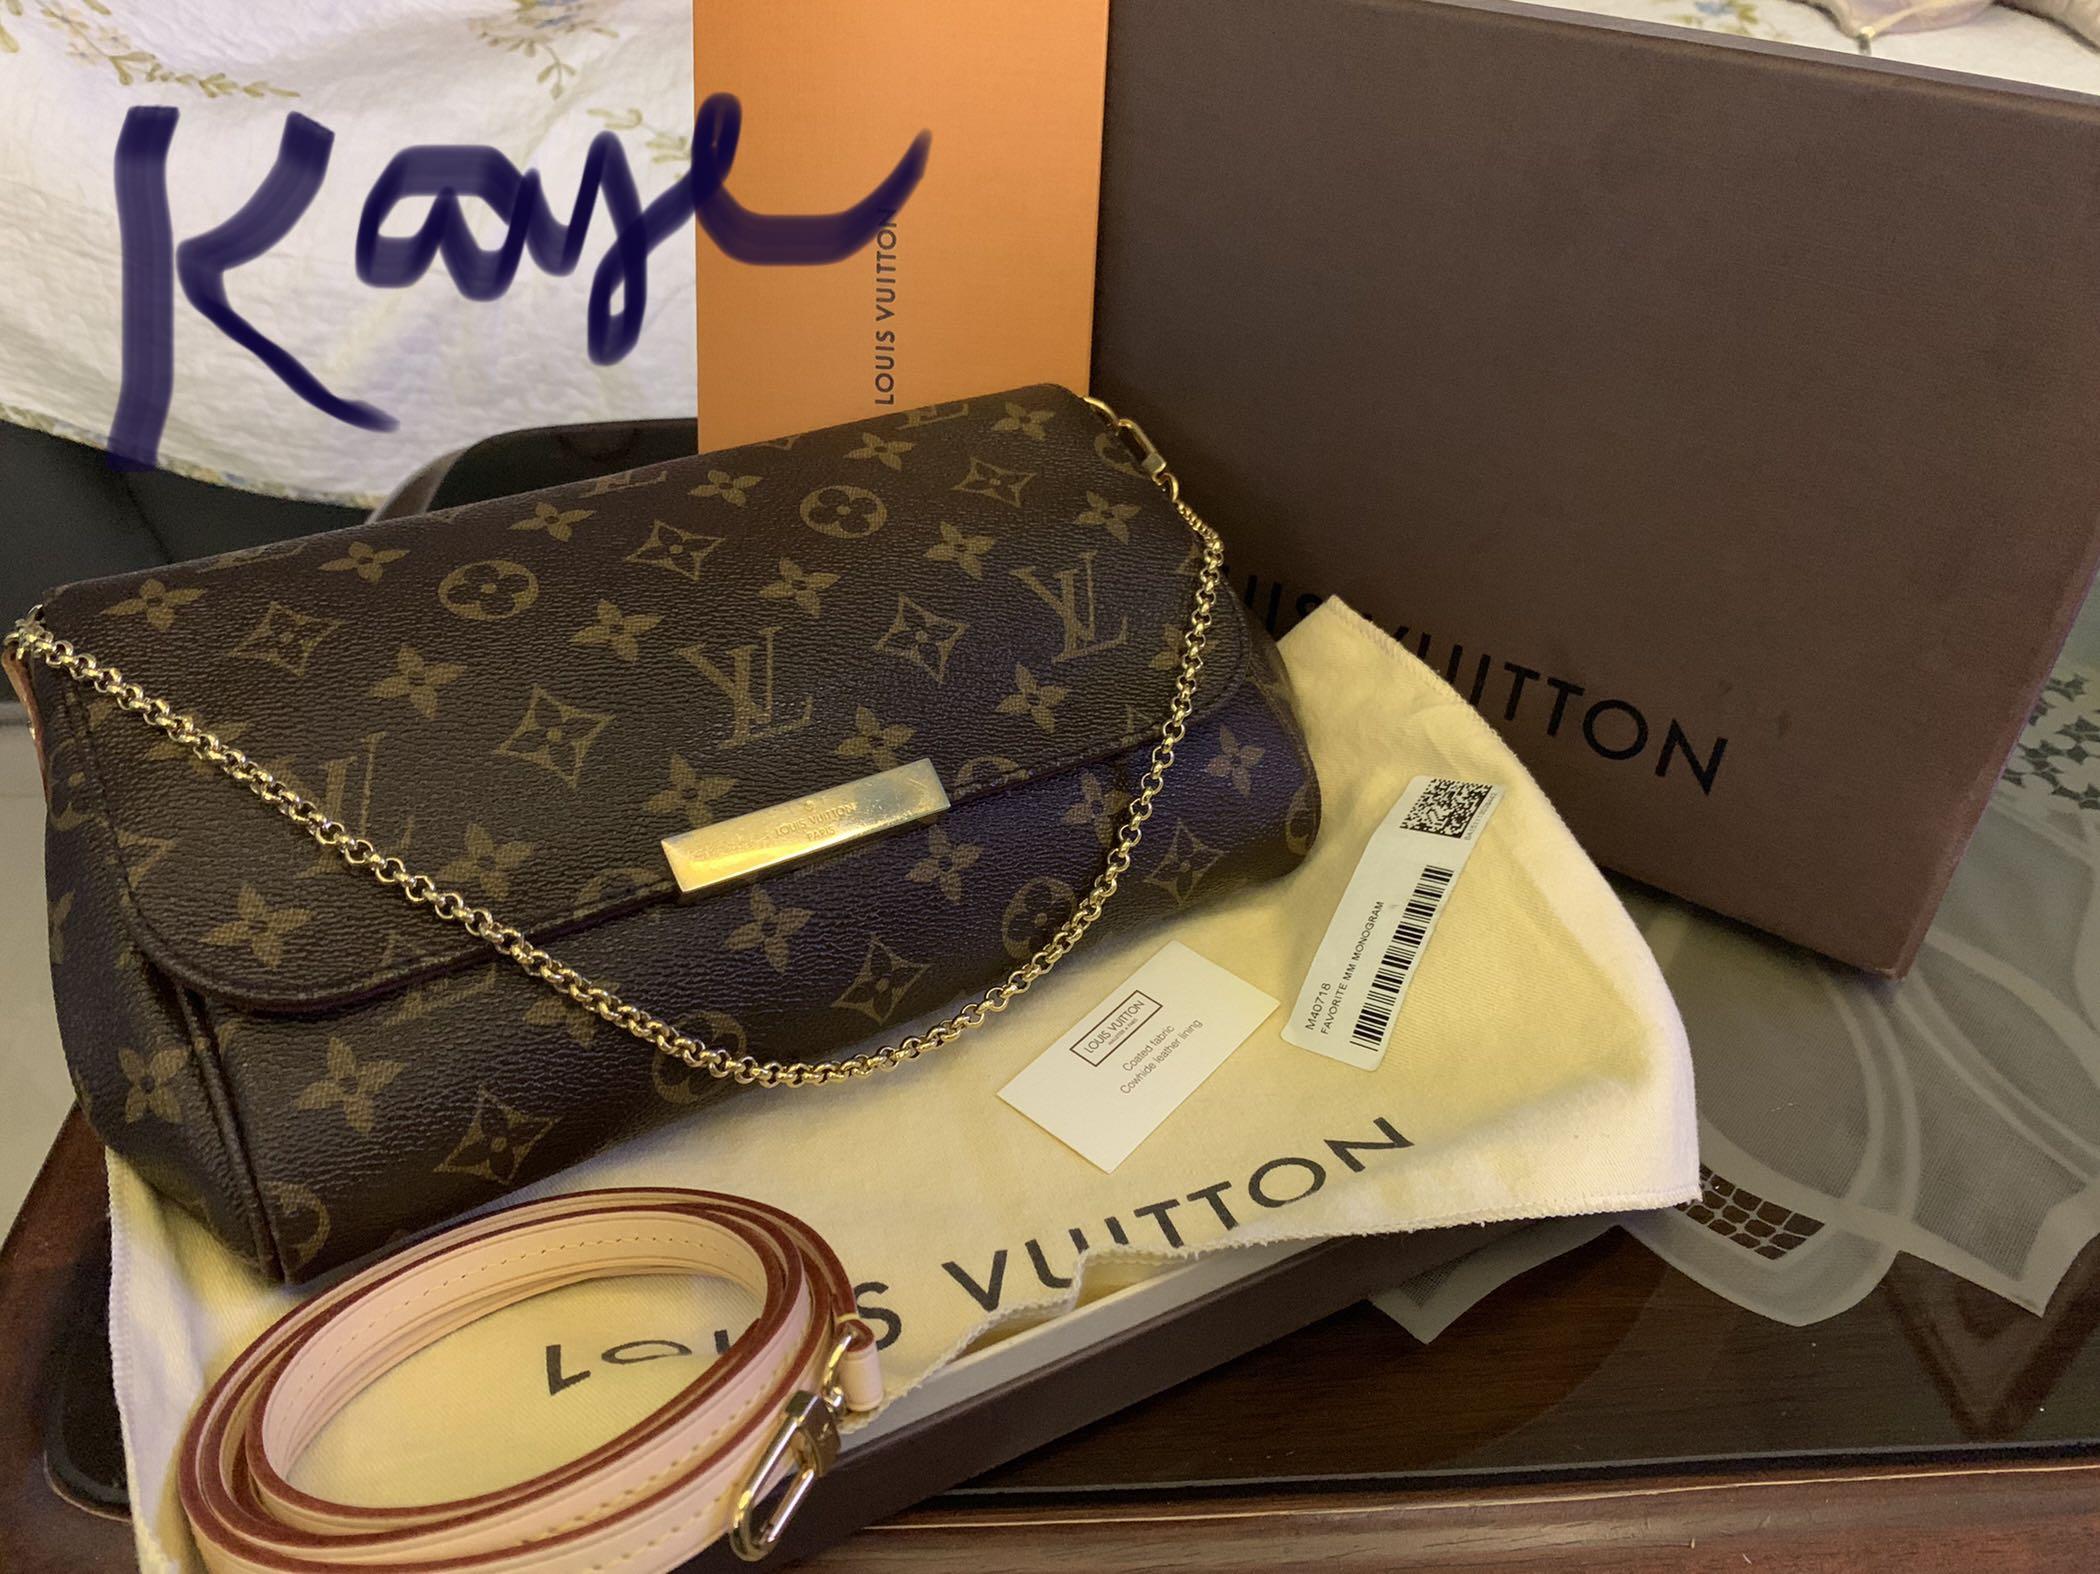 Louis Vuitton Favorite MM! Features, What Fits, Mod Shots 